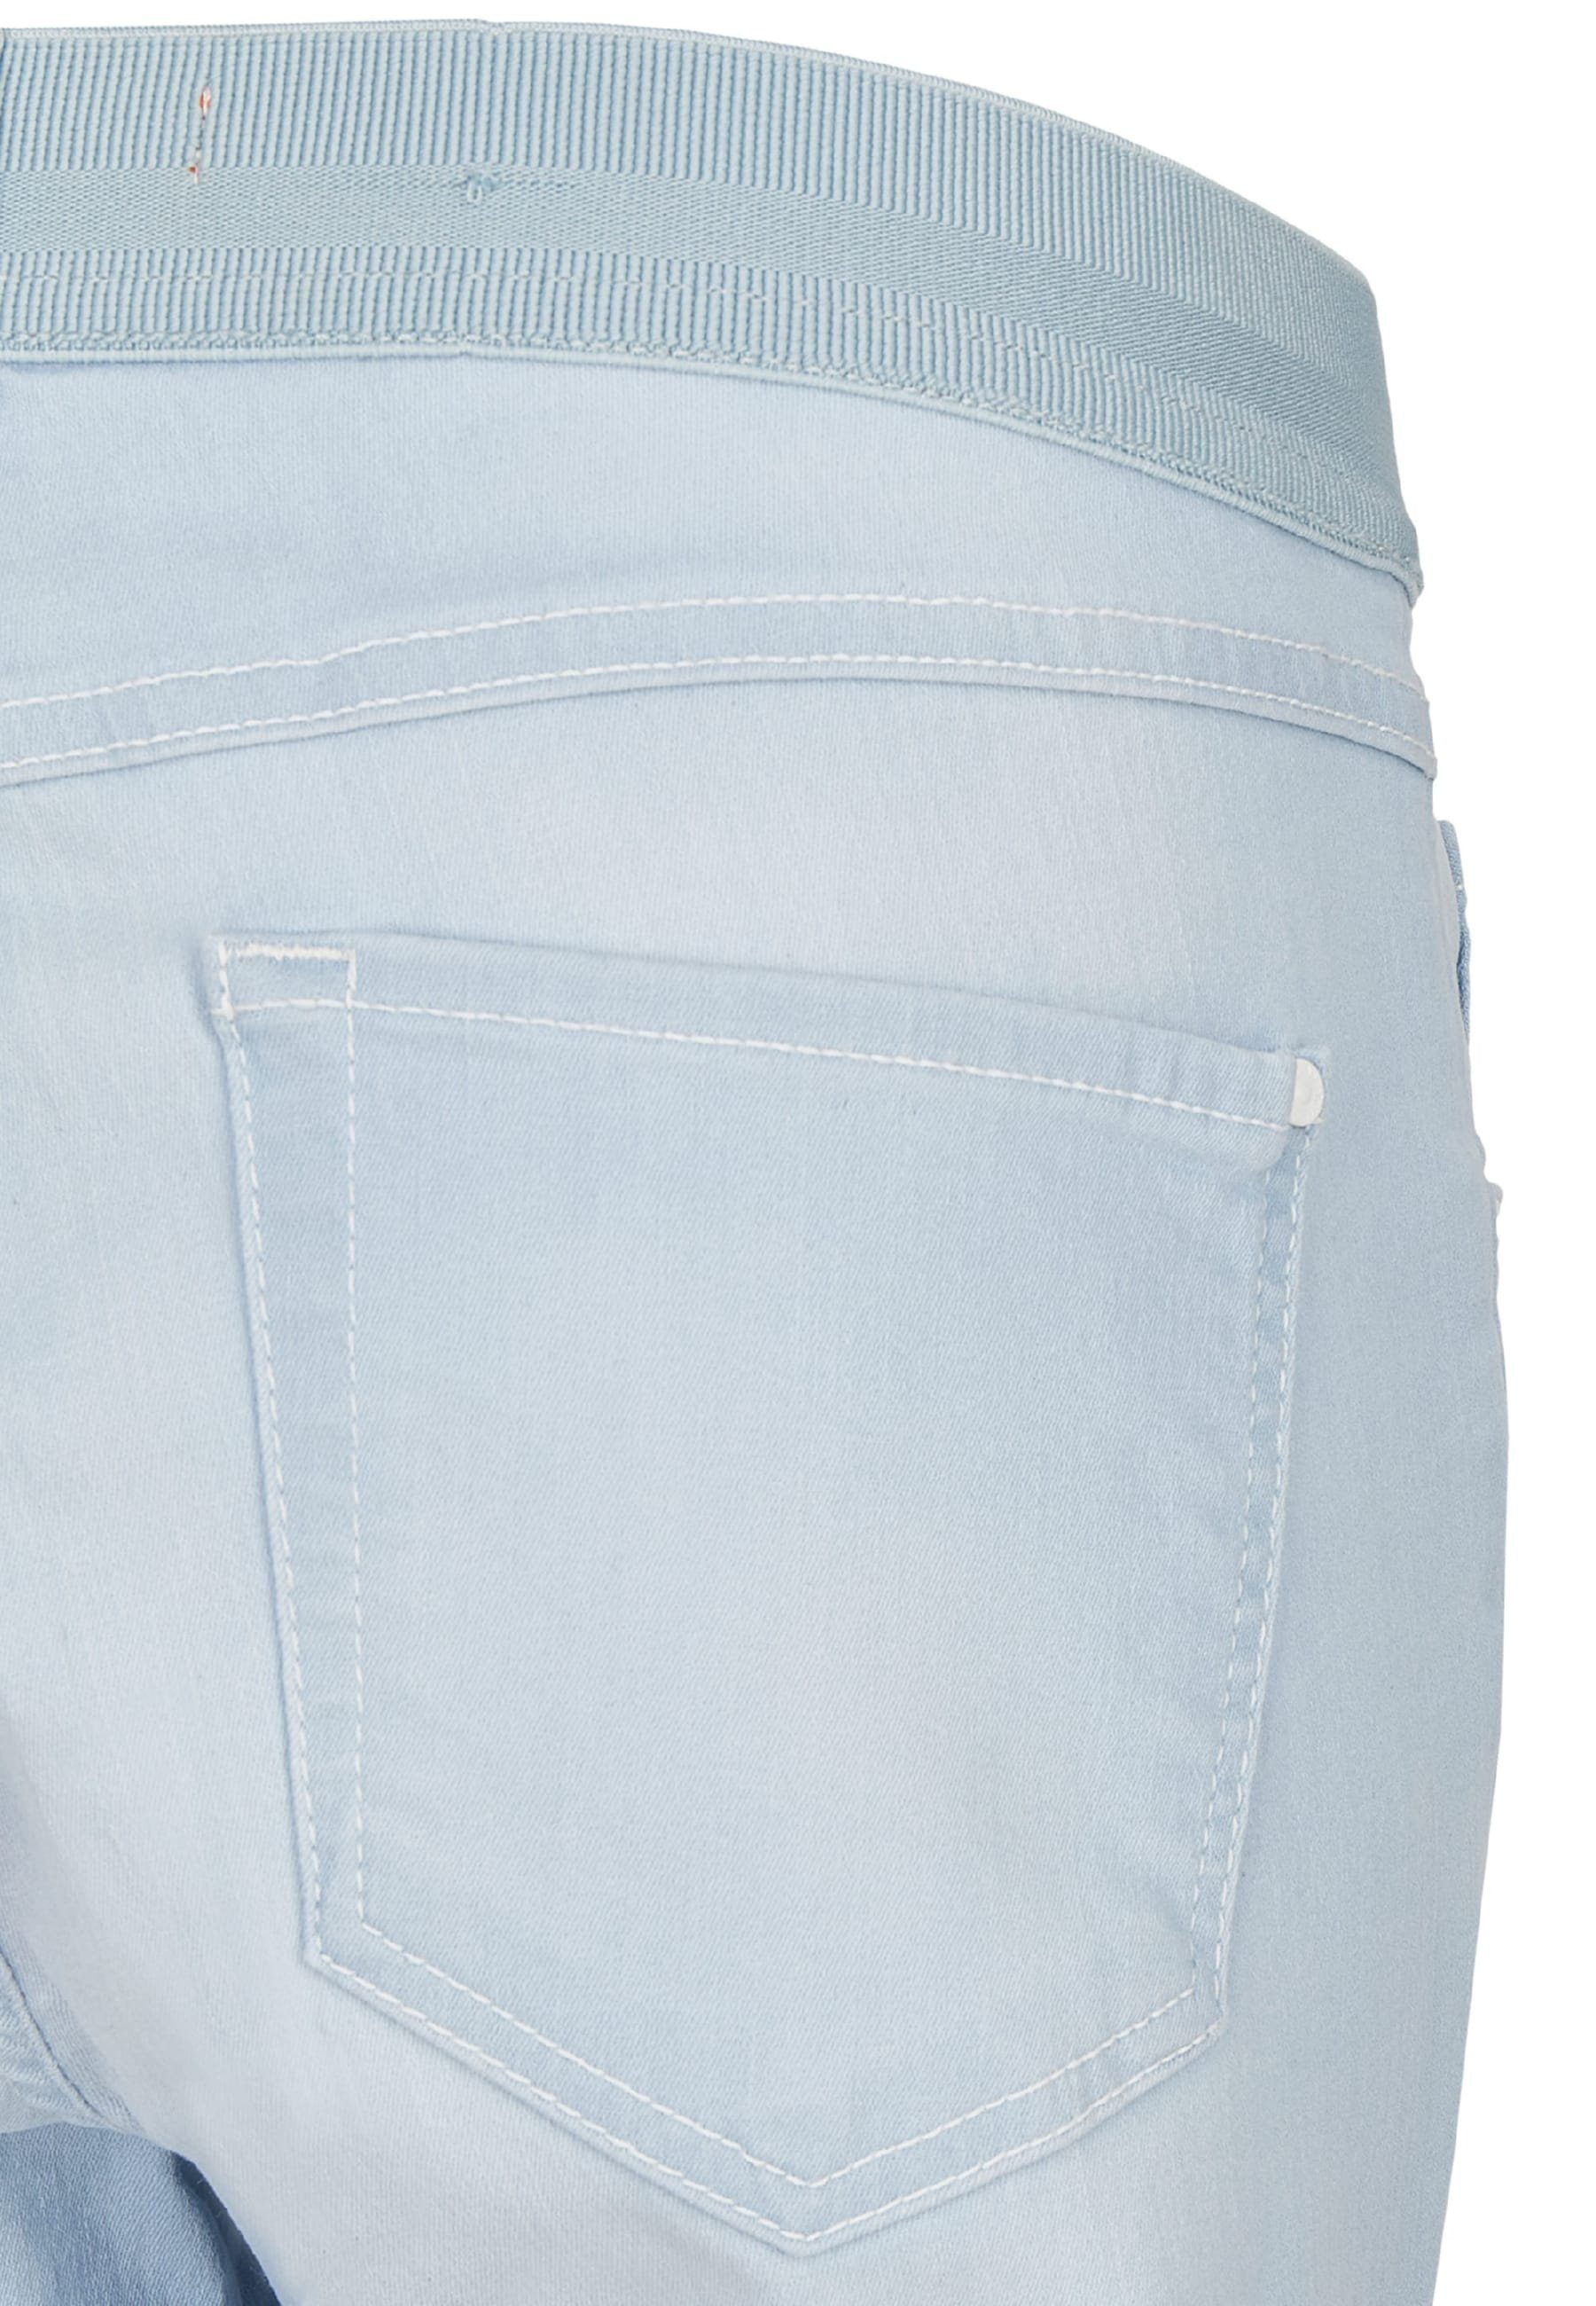 Dehnbund-Jeans Jeans Kurze Design Onesize ANGELS mit klassischem hellblau Capri